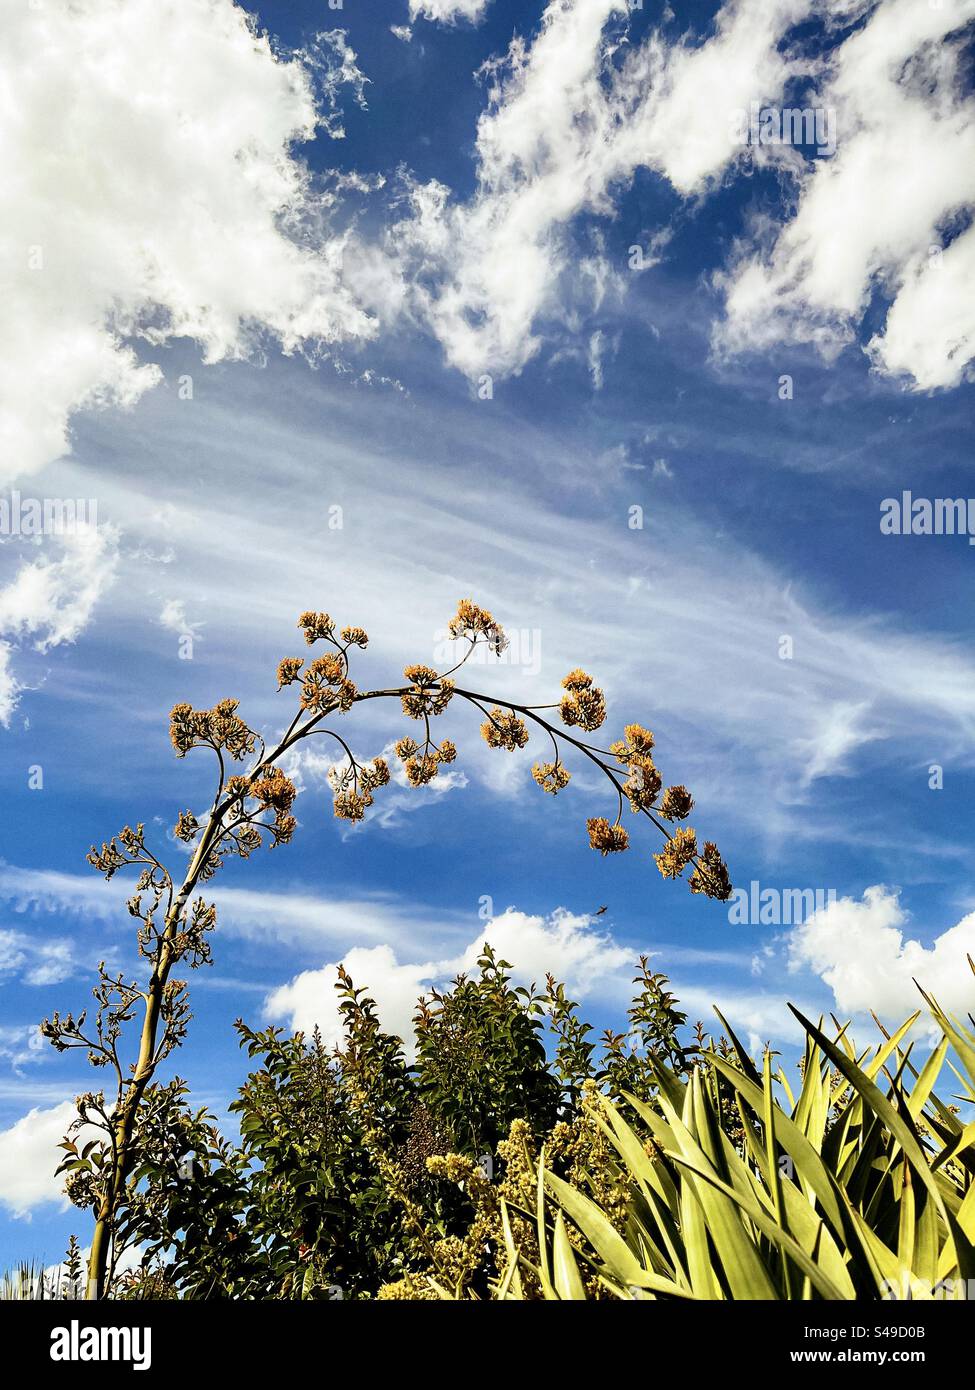 Vue panoramique de la tige de la plante agave en fleurs et des arbustes Dracaena contre les nuages de cirrus dans le ciel bleu. Paysage. Scenics-nature. Banque D'Images